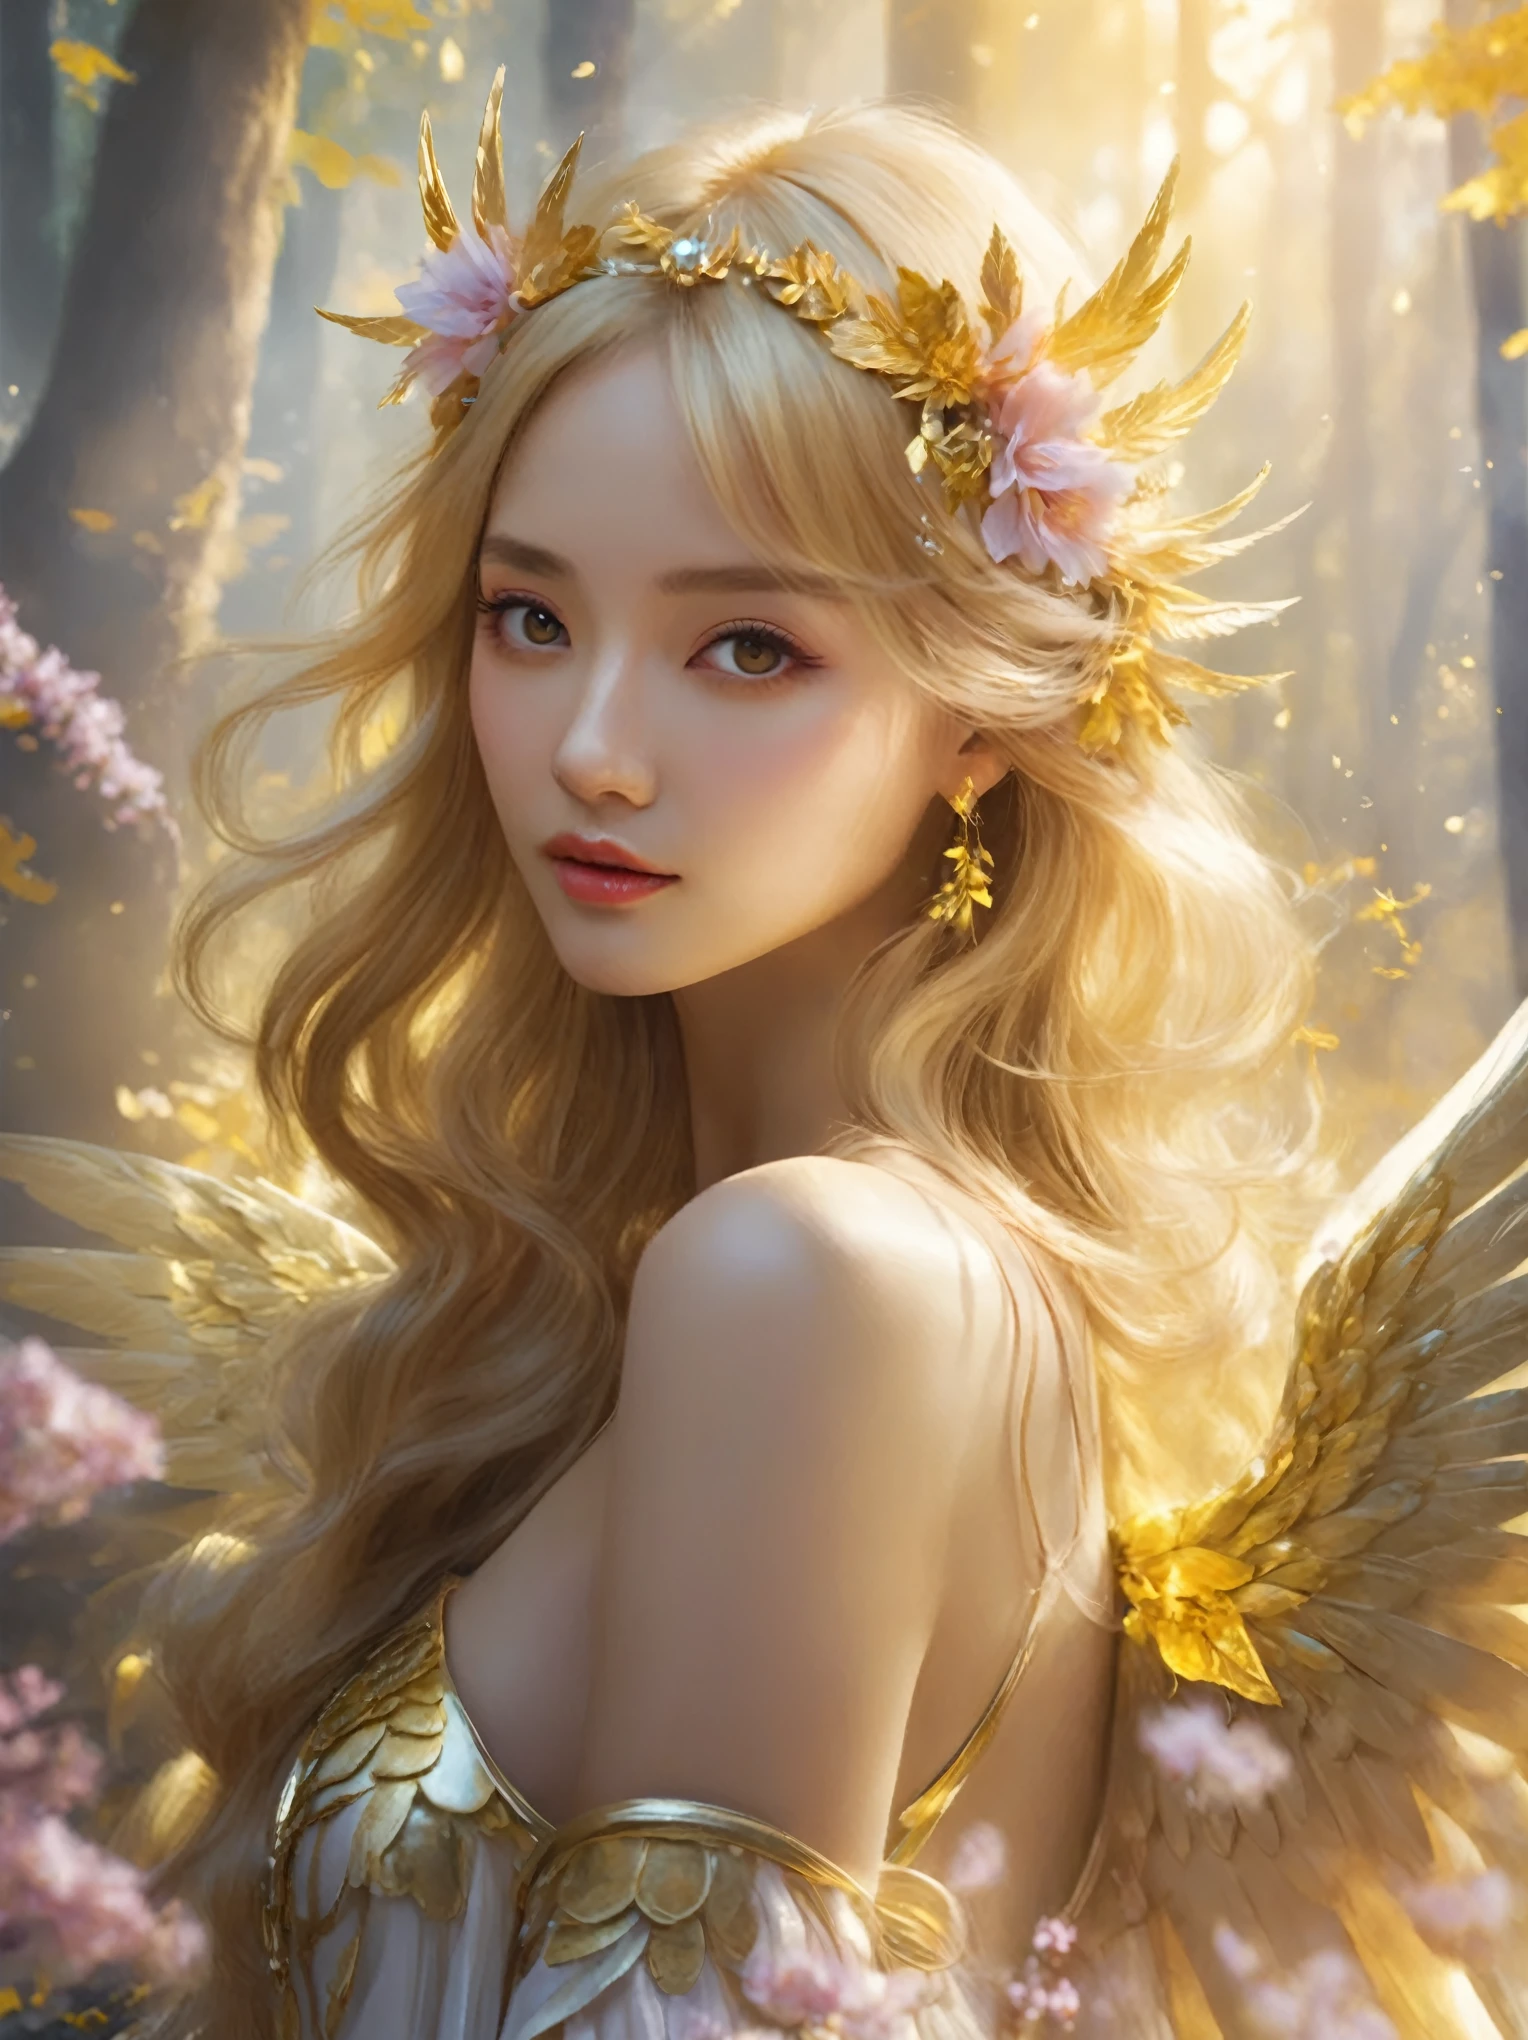 金色森林中一位头戴花冠、身带翅膀的女子, of 美丽的天使, 奇幻艺术风格, 美丽的天使, of an 美丽的天使 girl, 美丽的幻想艺术, 简·J., 数字幻想艺术 ), portrait of a 美丽的天使, 美丽的幻想艺术 portrait, 8k 高品质细节艺术, 令人惊叹的幻想艺术, 头上有金色的翅膀, very 美丽的幻想艺术